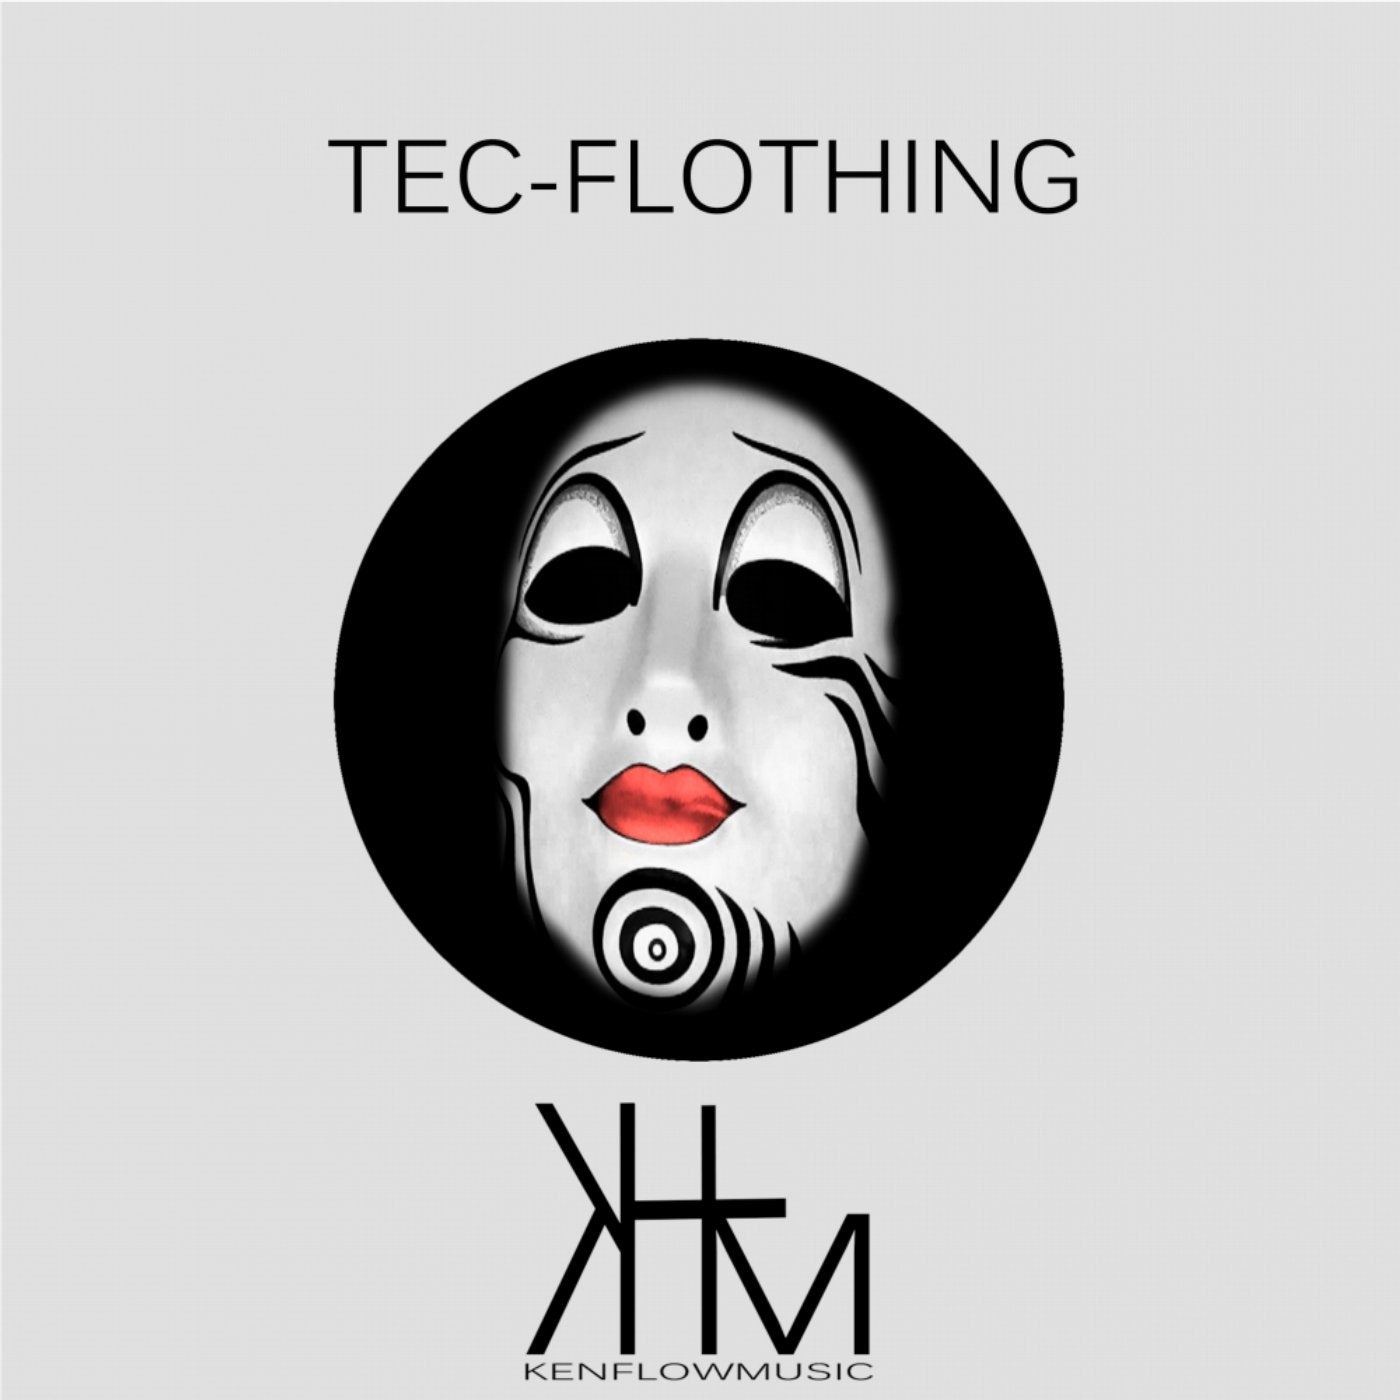 Tec-Flothing